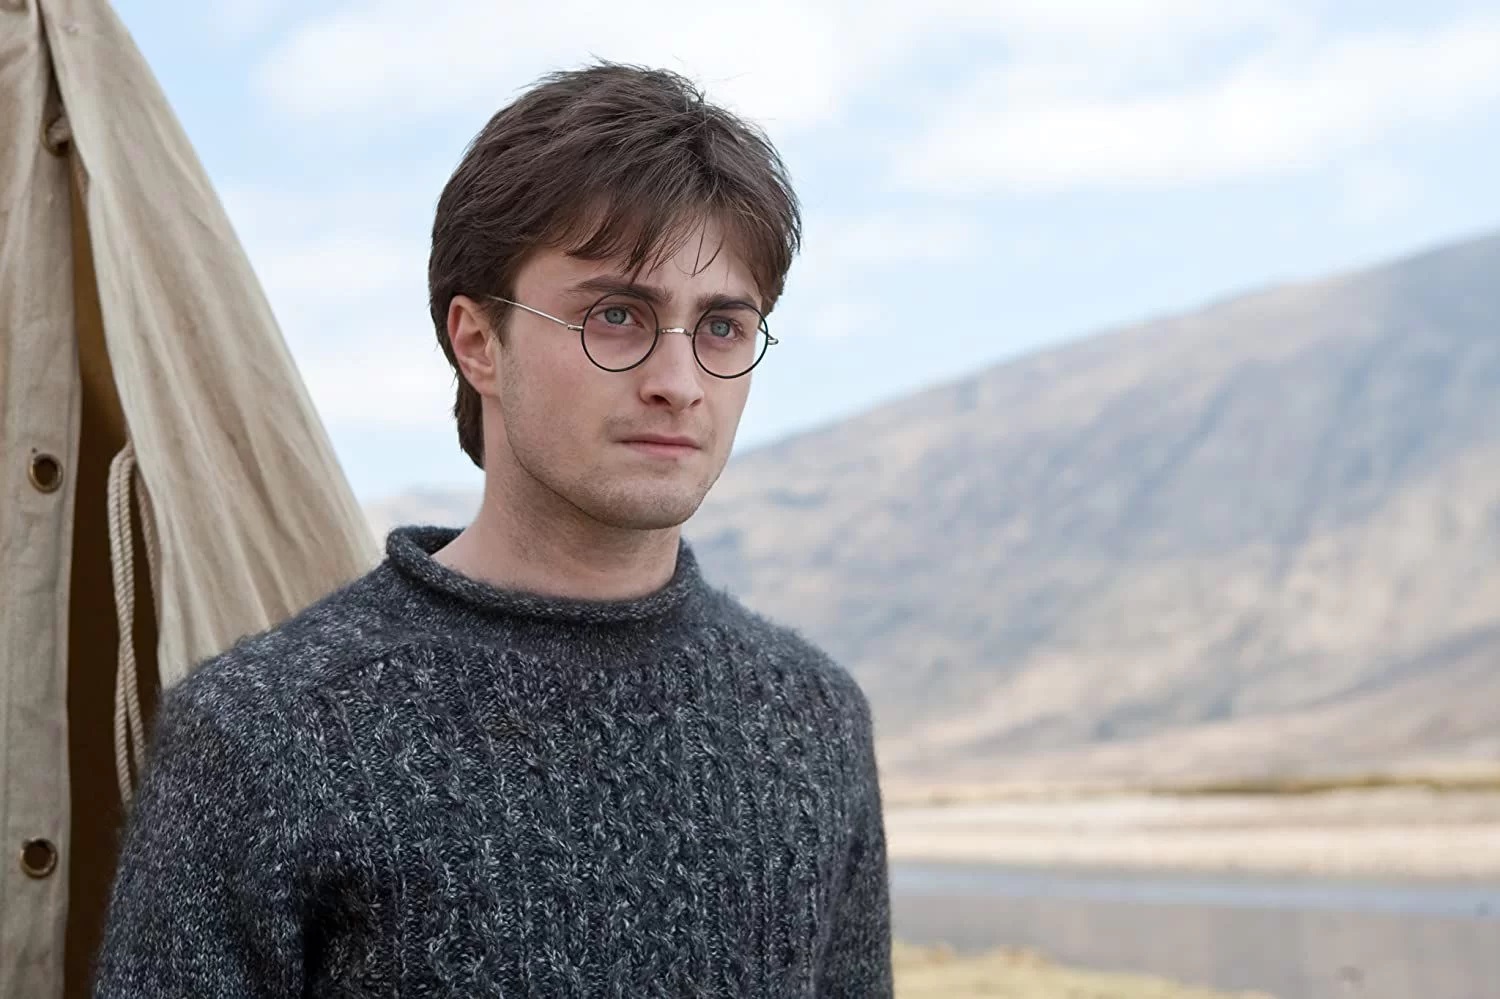 Daniel Radcliffe risponde a J.K. Rowling sulle posizioni transfobiche: “Mi rattrista”